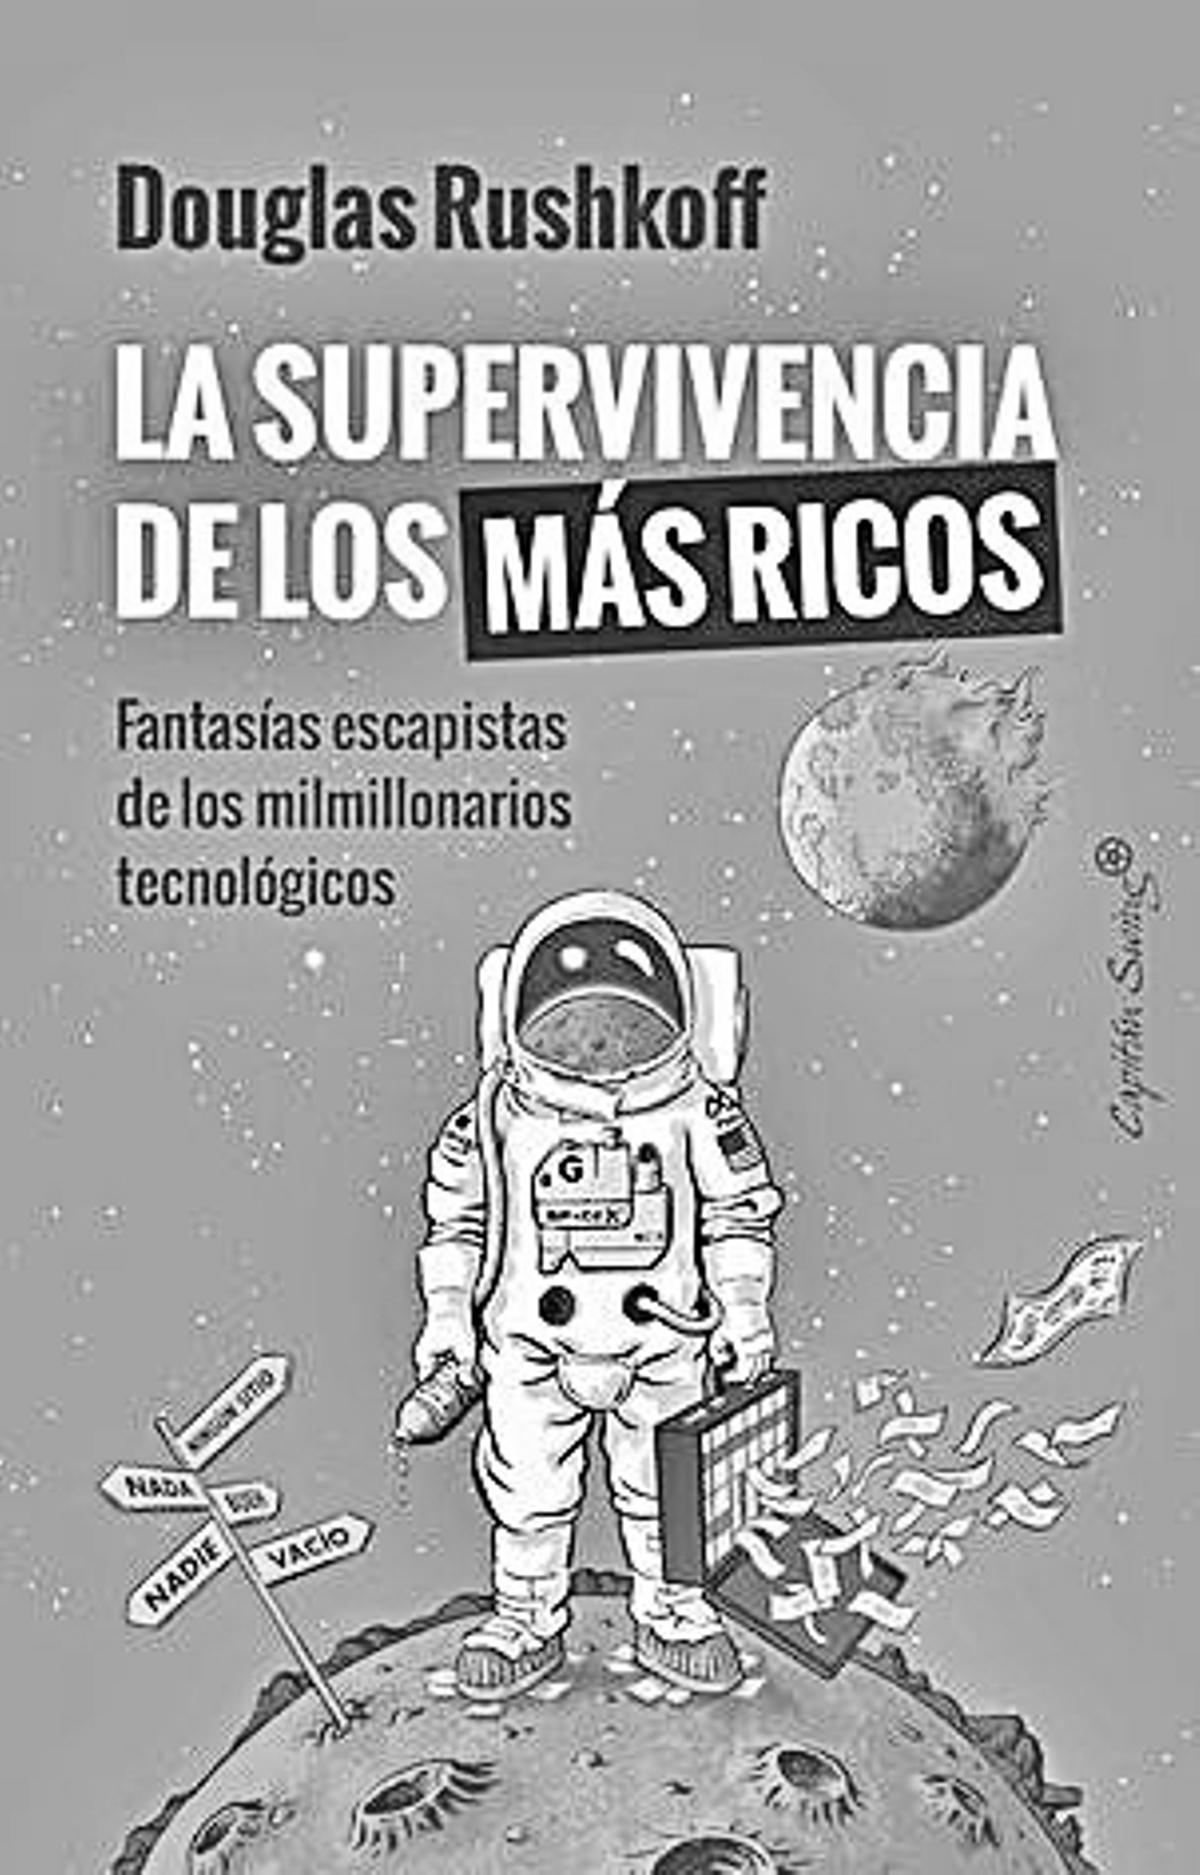 Douglas Rushkoff   La supervivencia de los más ricos   Traducción de Francisco J. Ramos  Capitán Swing  224 páginas / 20 euros